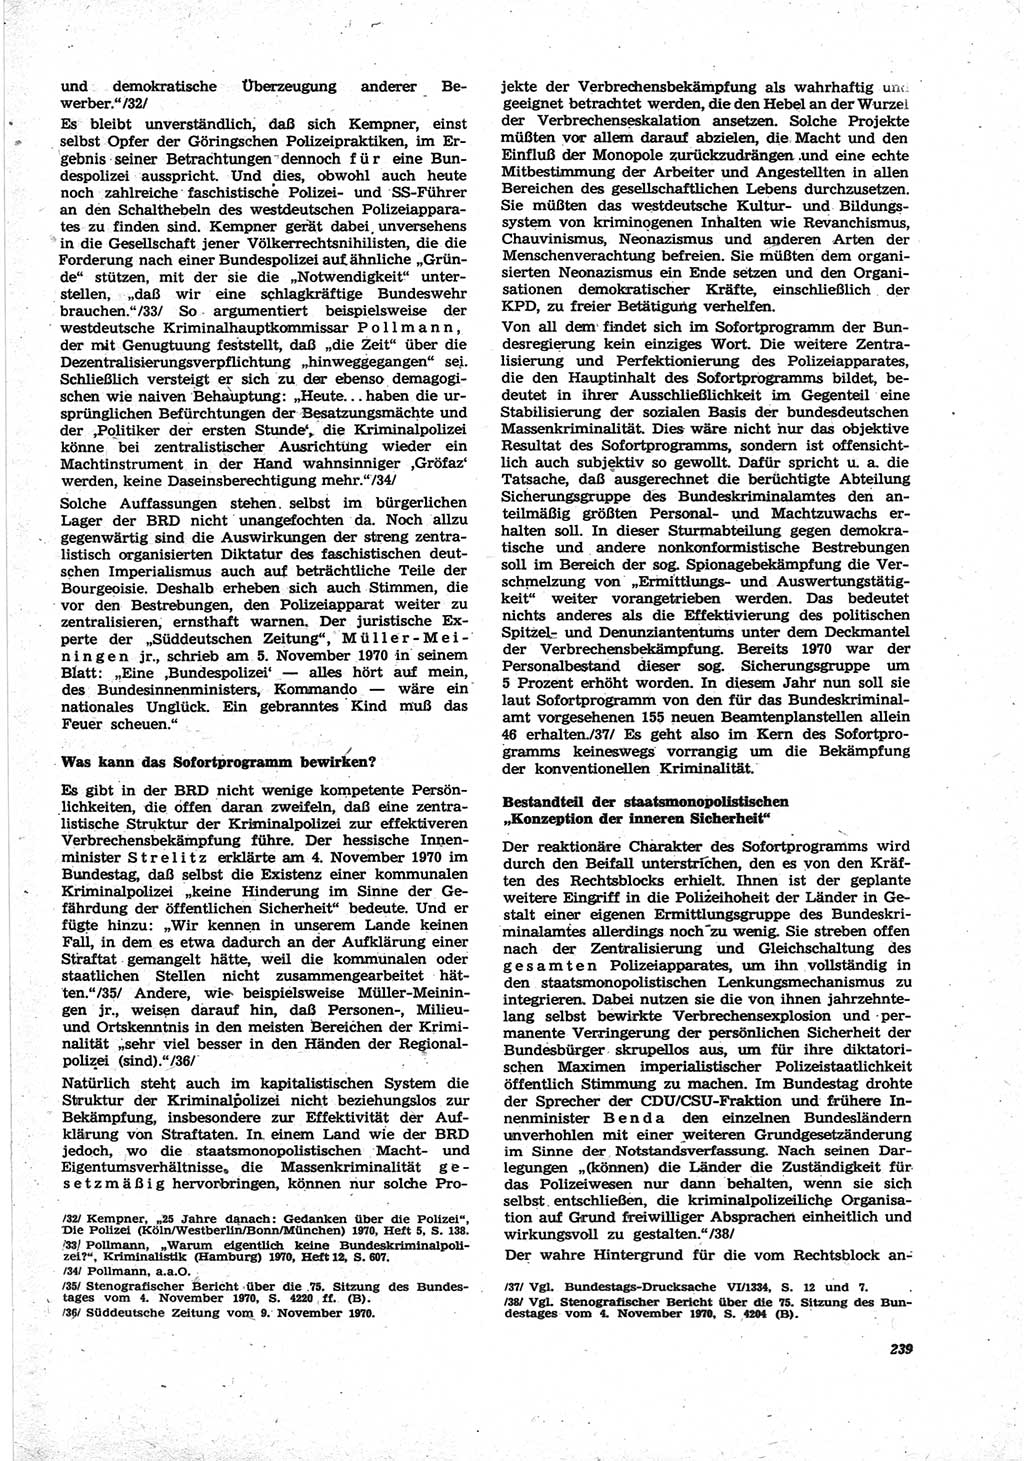 Neue Justiz (NJ), Zeitschrift für Recht und Rechtswissenschaft [Deutsche Demokratische Republik (DDR)], 25. Jahrgang 1971, Seite 239 (NJ DDR 1971, S. 239)